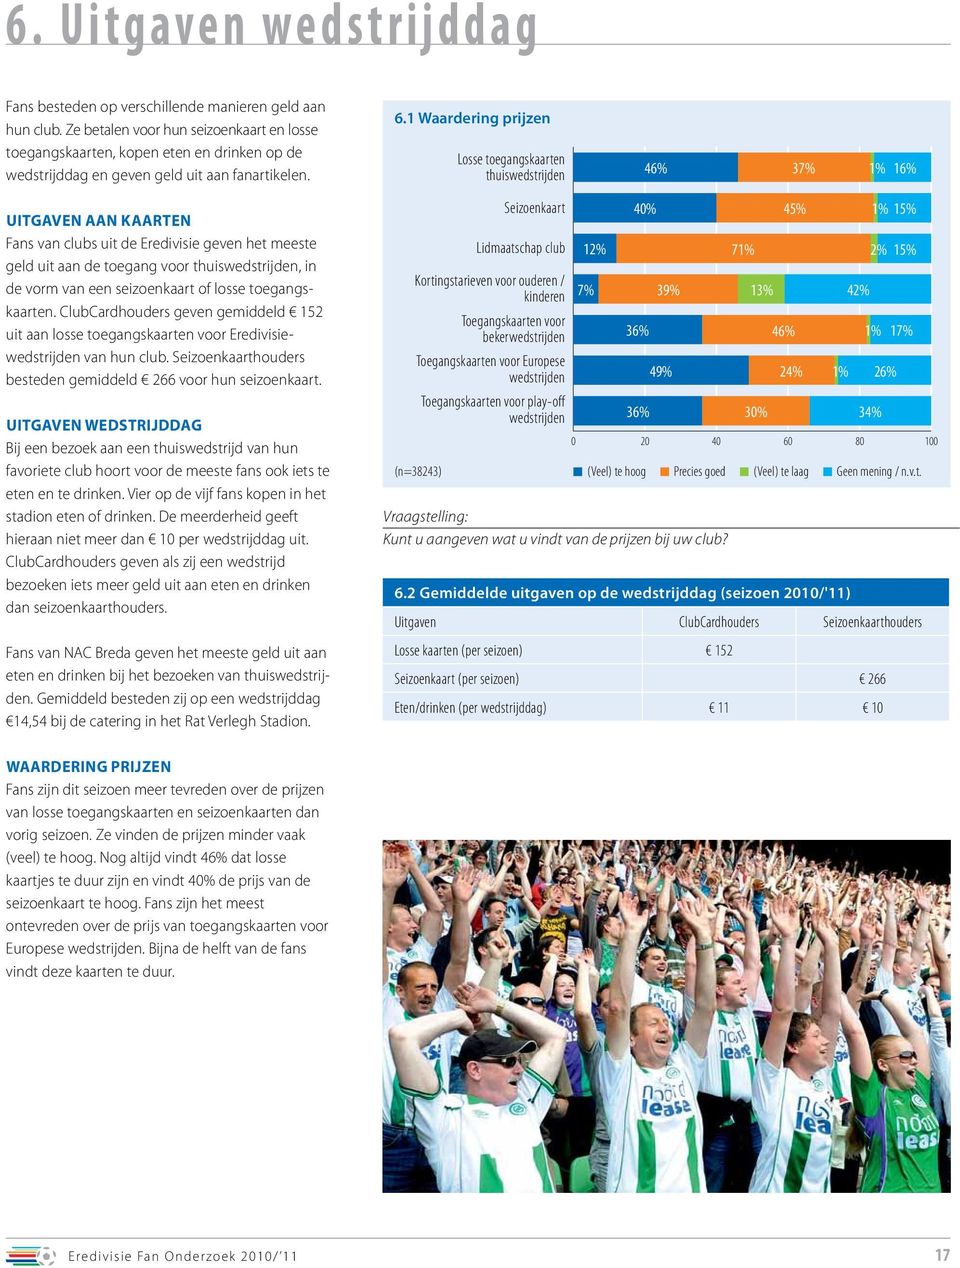 1 Waardering prijzen Losse toegangskaarten thuiswedstrijden 46% 37% 1% 16% Uitgaven aan kaarten Fans van clubs uit de Eredivisie geven het meeste geld uit aan de toegang voor thuiswedstrijden, in de